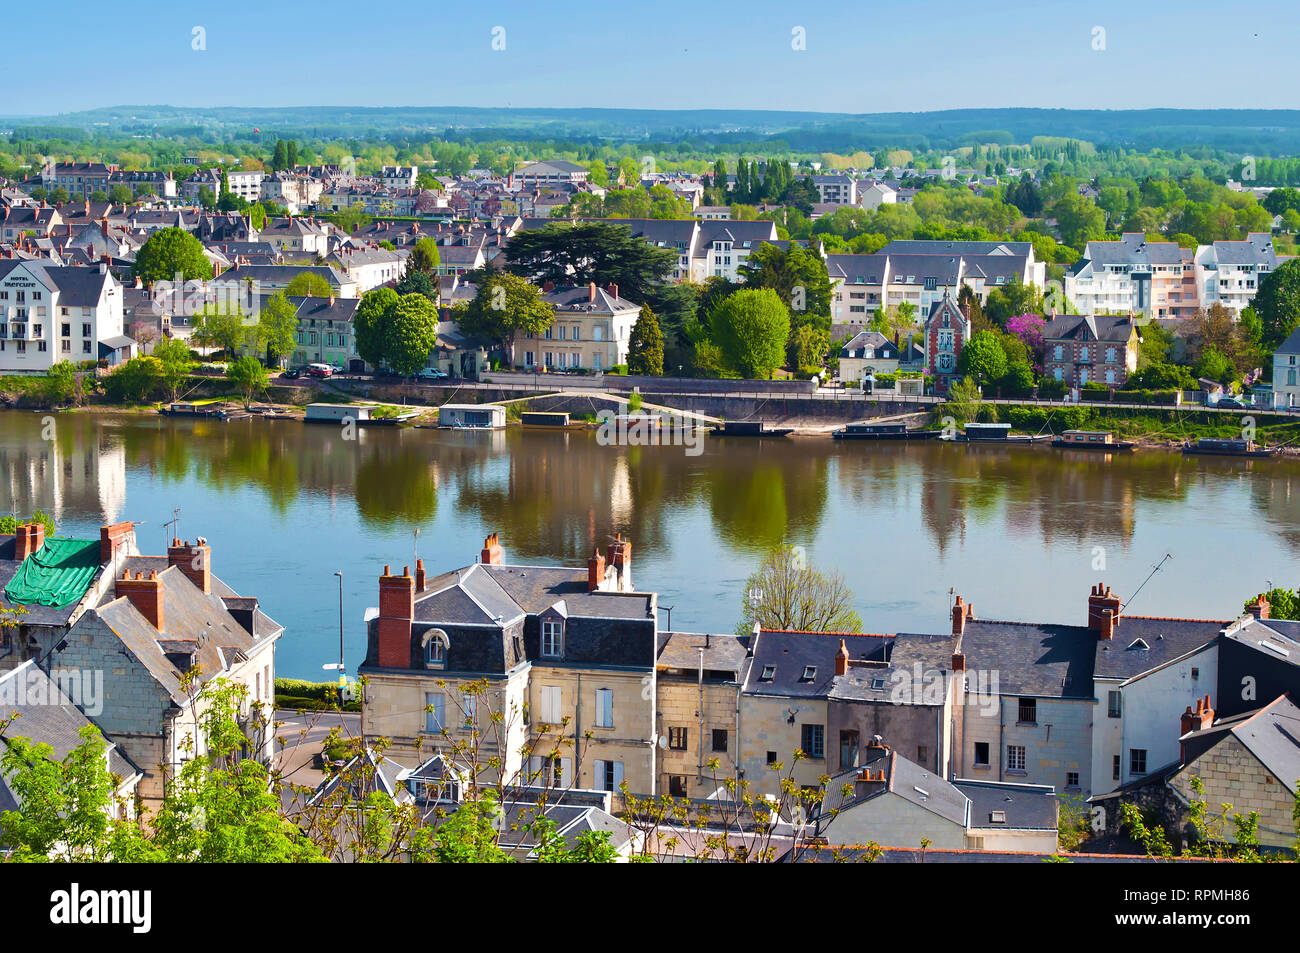 Vue imprenable sur la petite ville étonnante Saumur, France. De nombreuses maisons blanches et grises près d'un fleuve Loire, beaucoup d'arbres et toits verts. Printemps Chaud m Banque D'Images